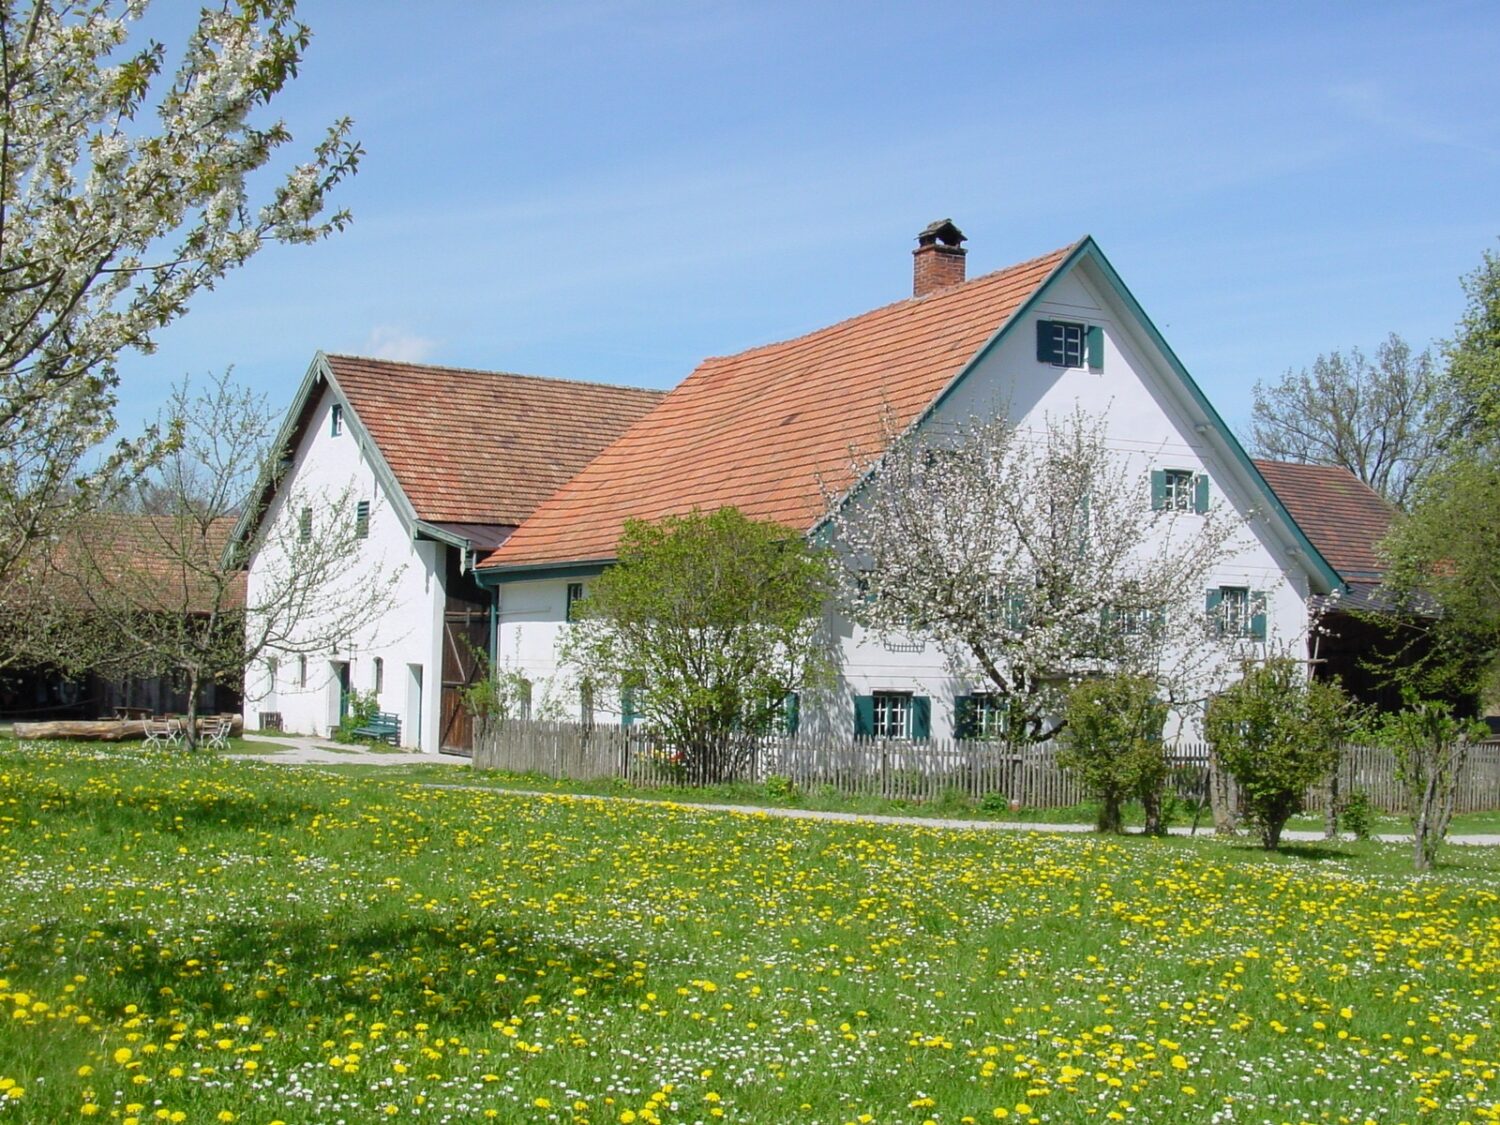 Bild zu Bauernhofmuseum Jexhof